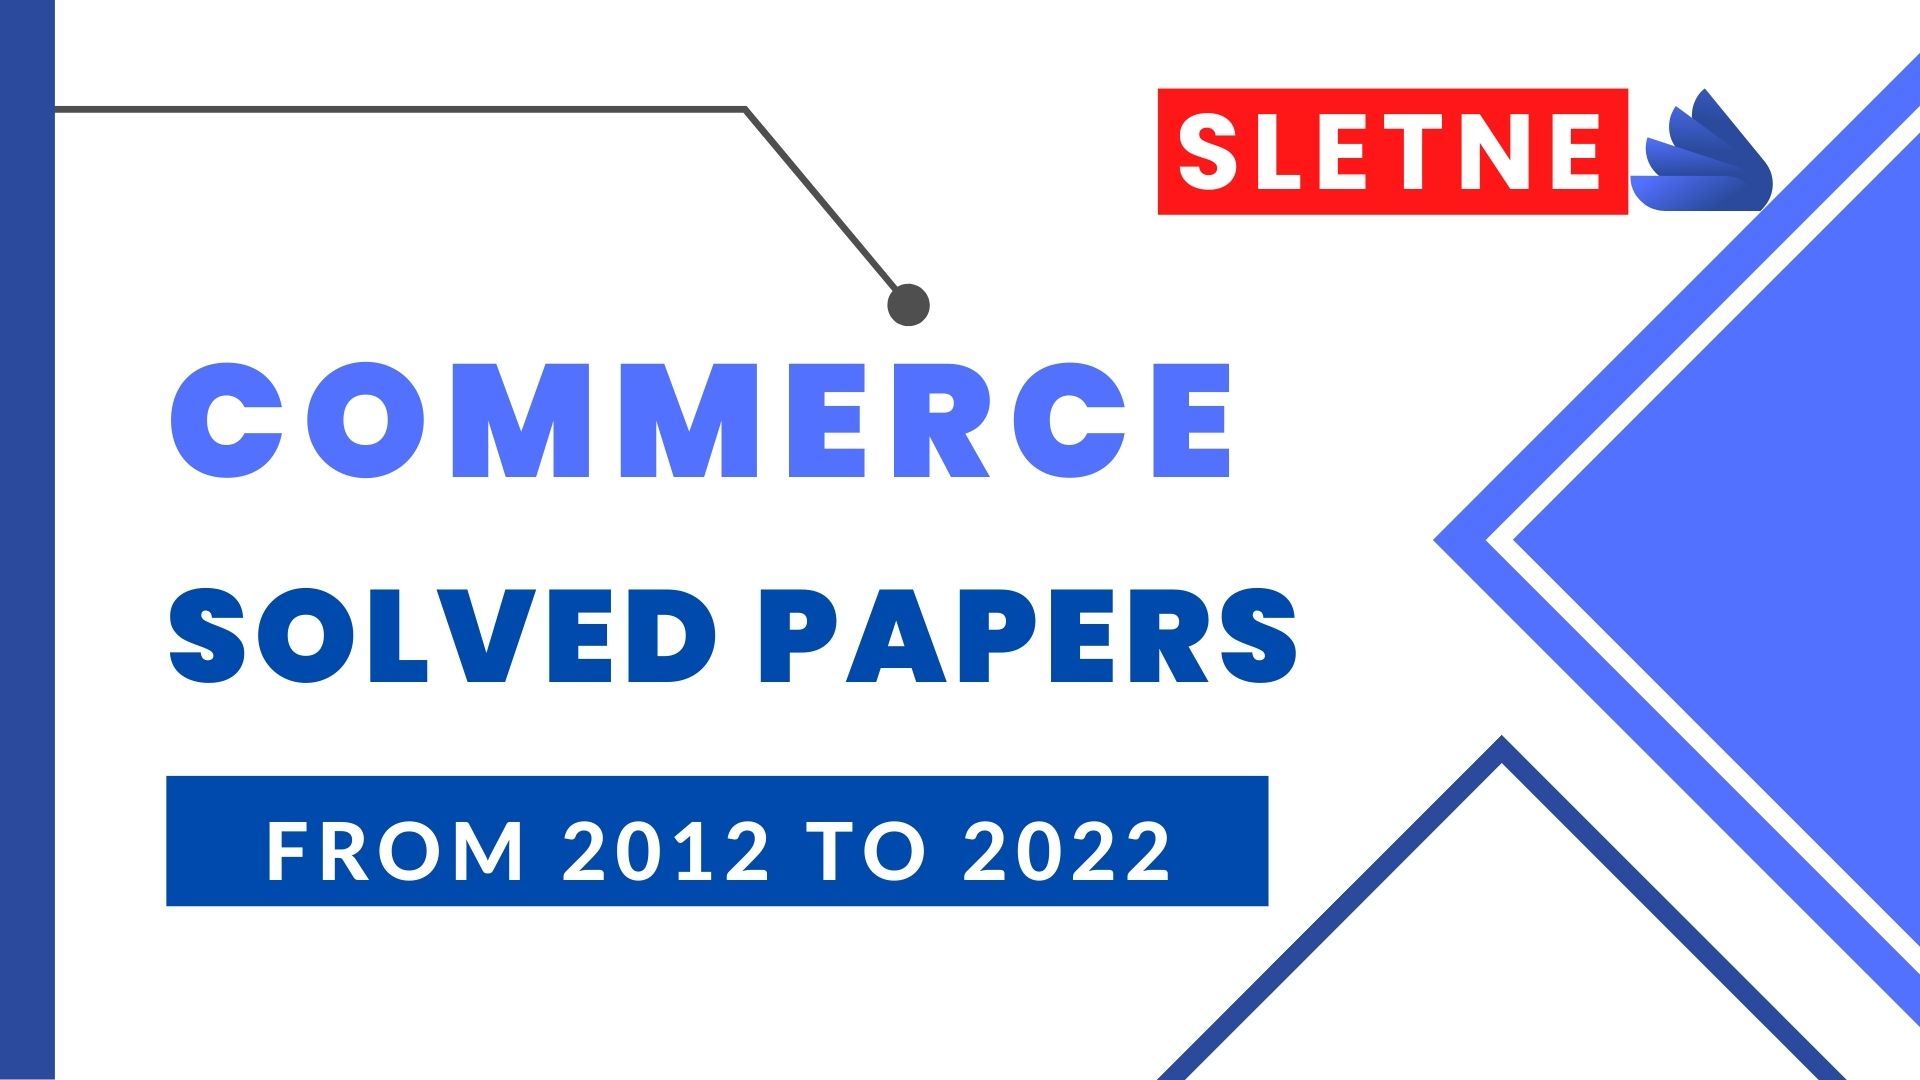 slet ne commerce solved paper 2018